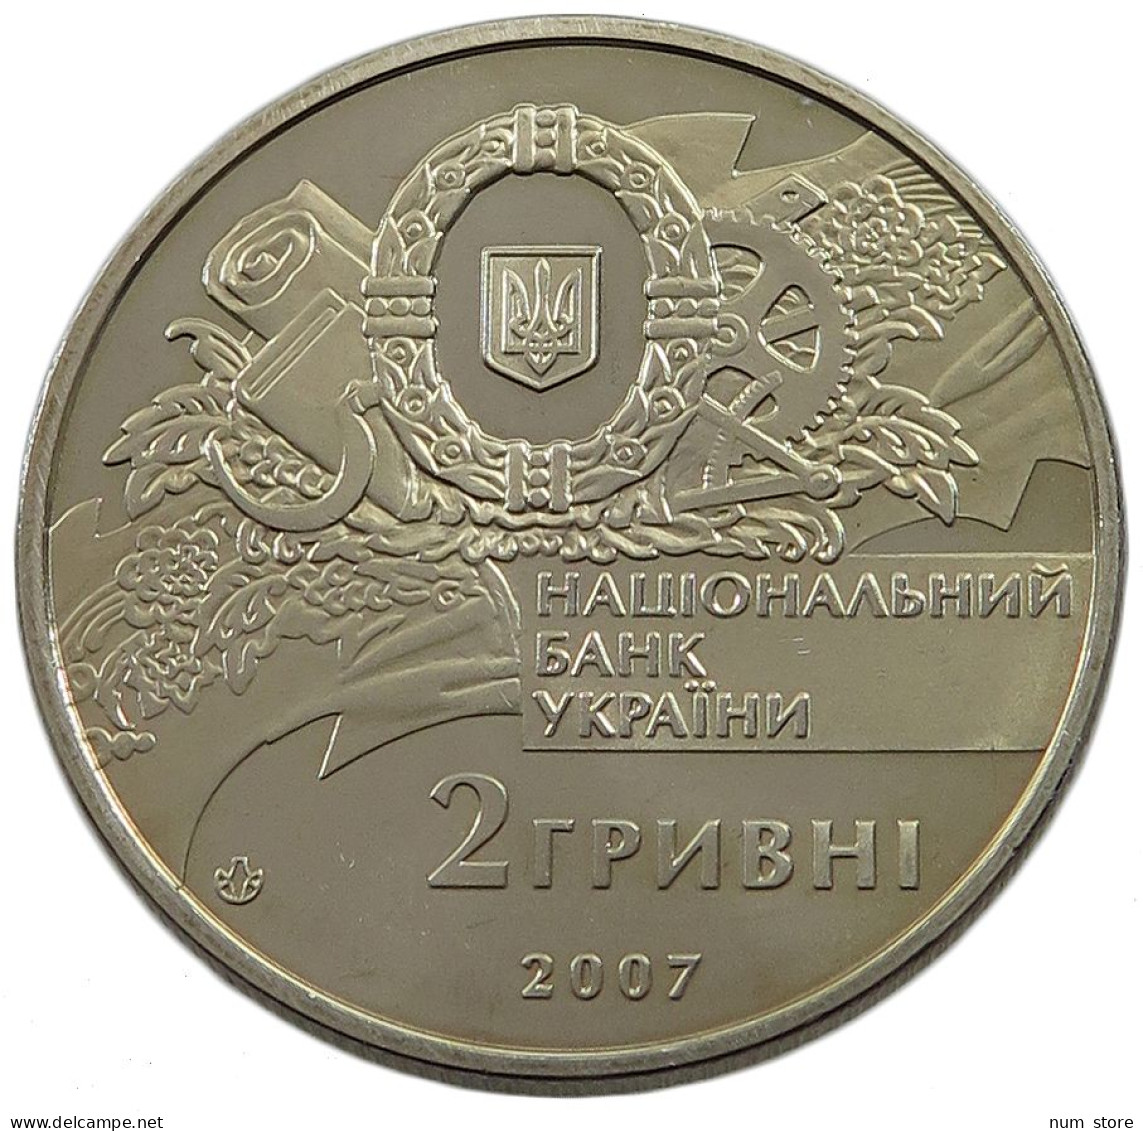 UKRAINE 2 HRYVNI 2007  #w033 0367 - Ukraine